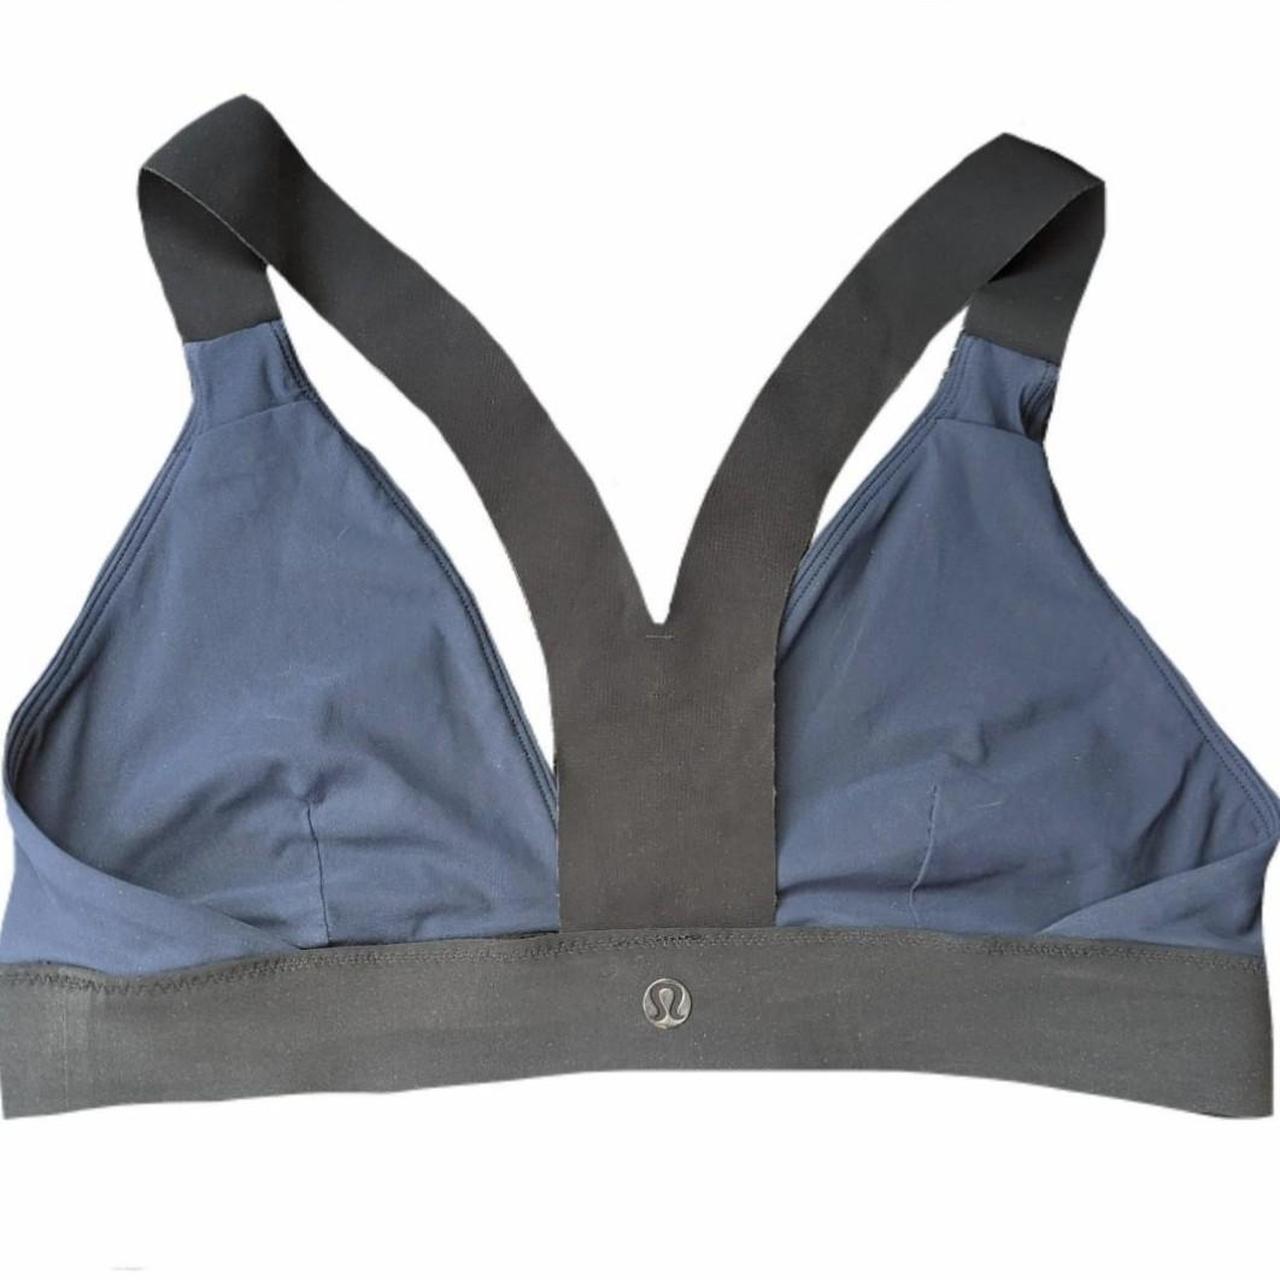 navy blue sports bra from lululemon labeled size 6 - Depop